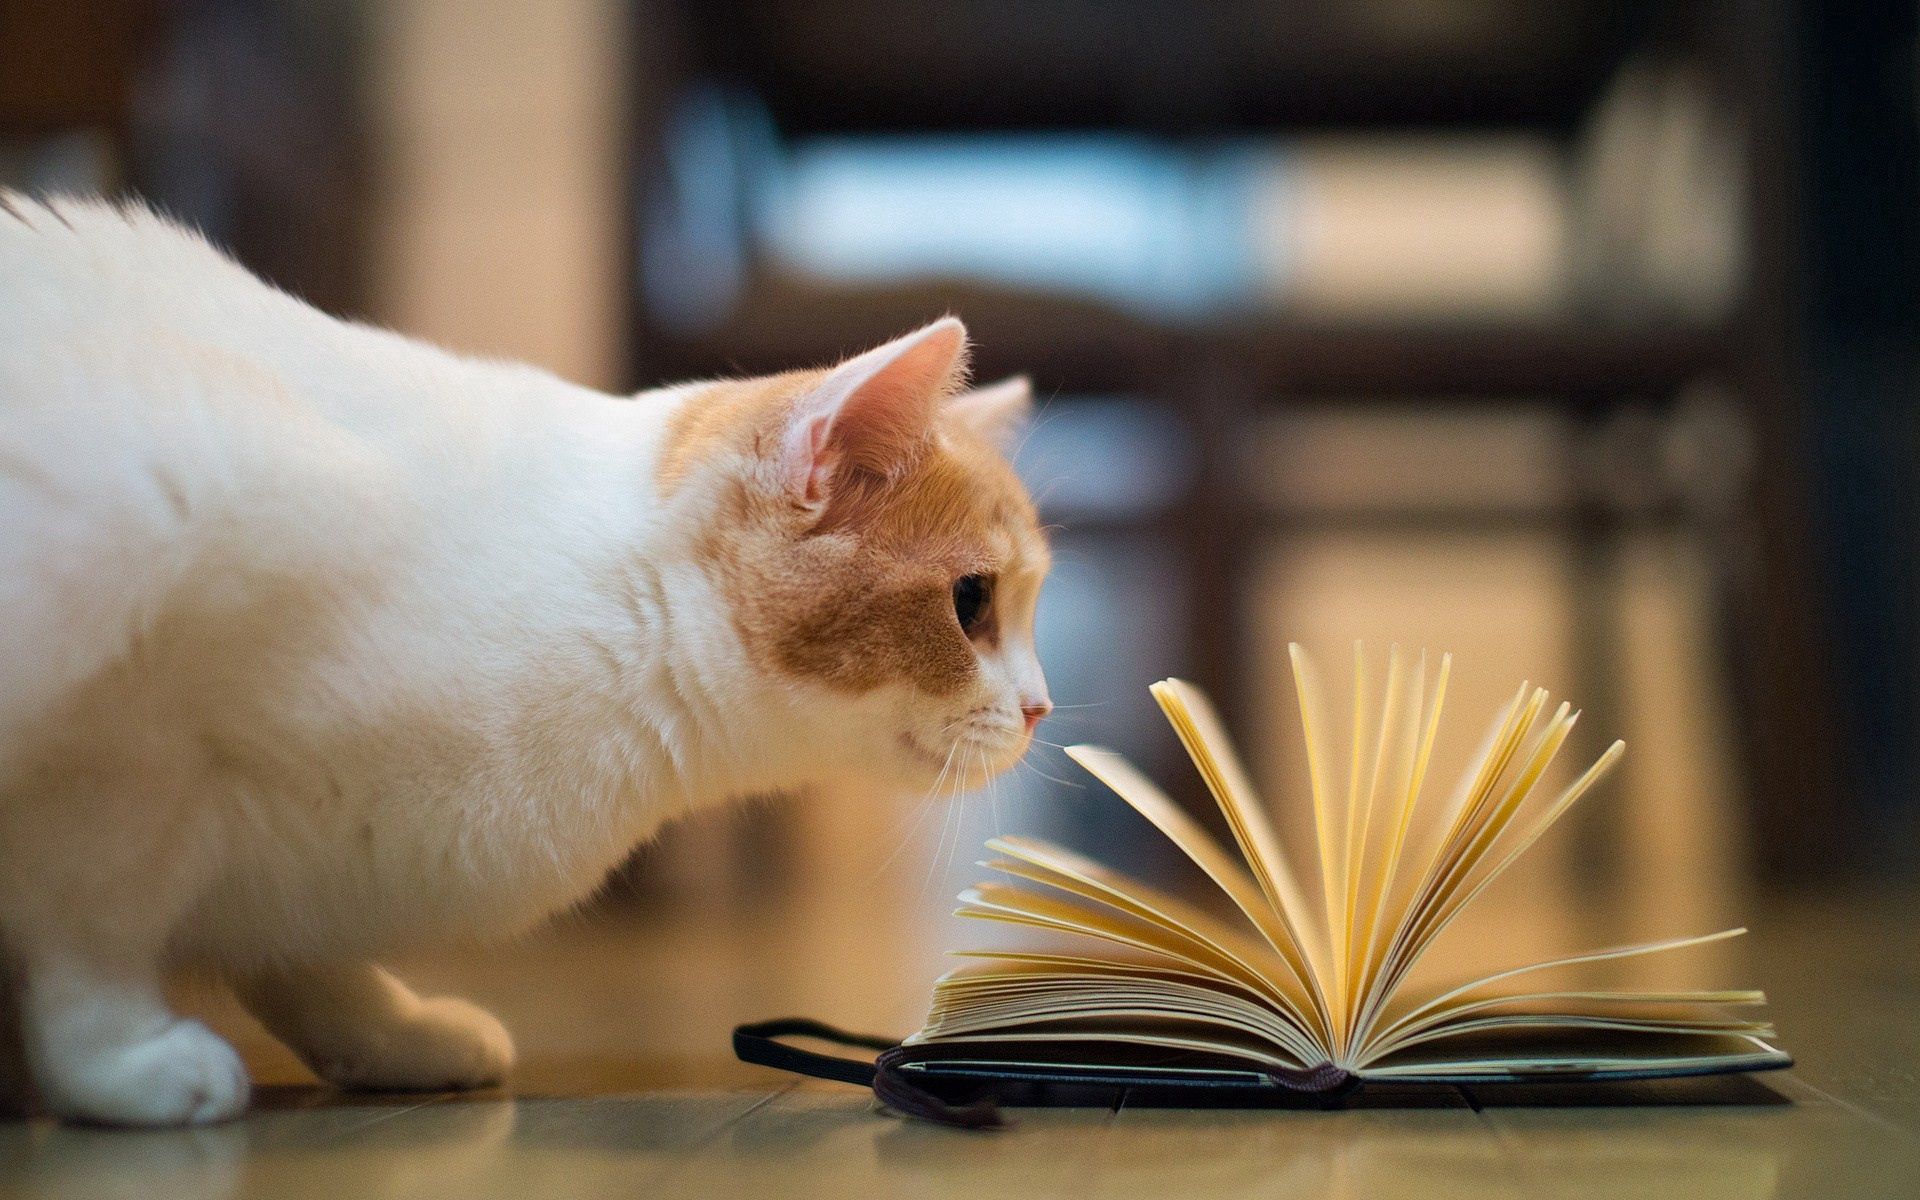 curiosity, animals, cat, book, floors